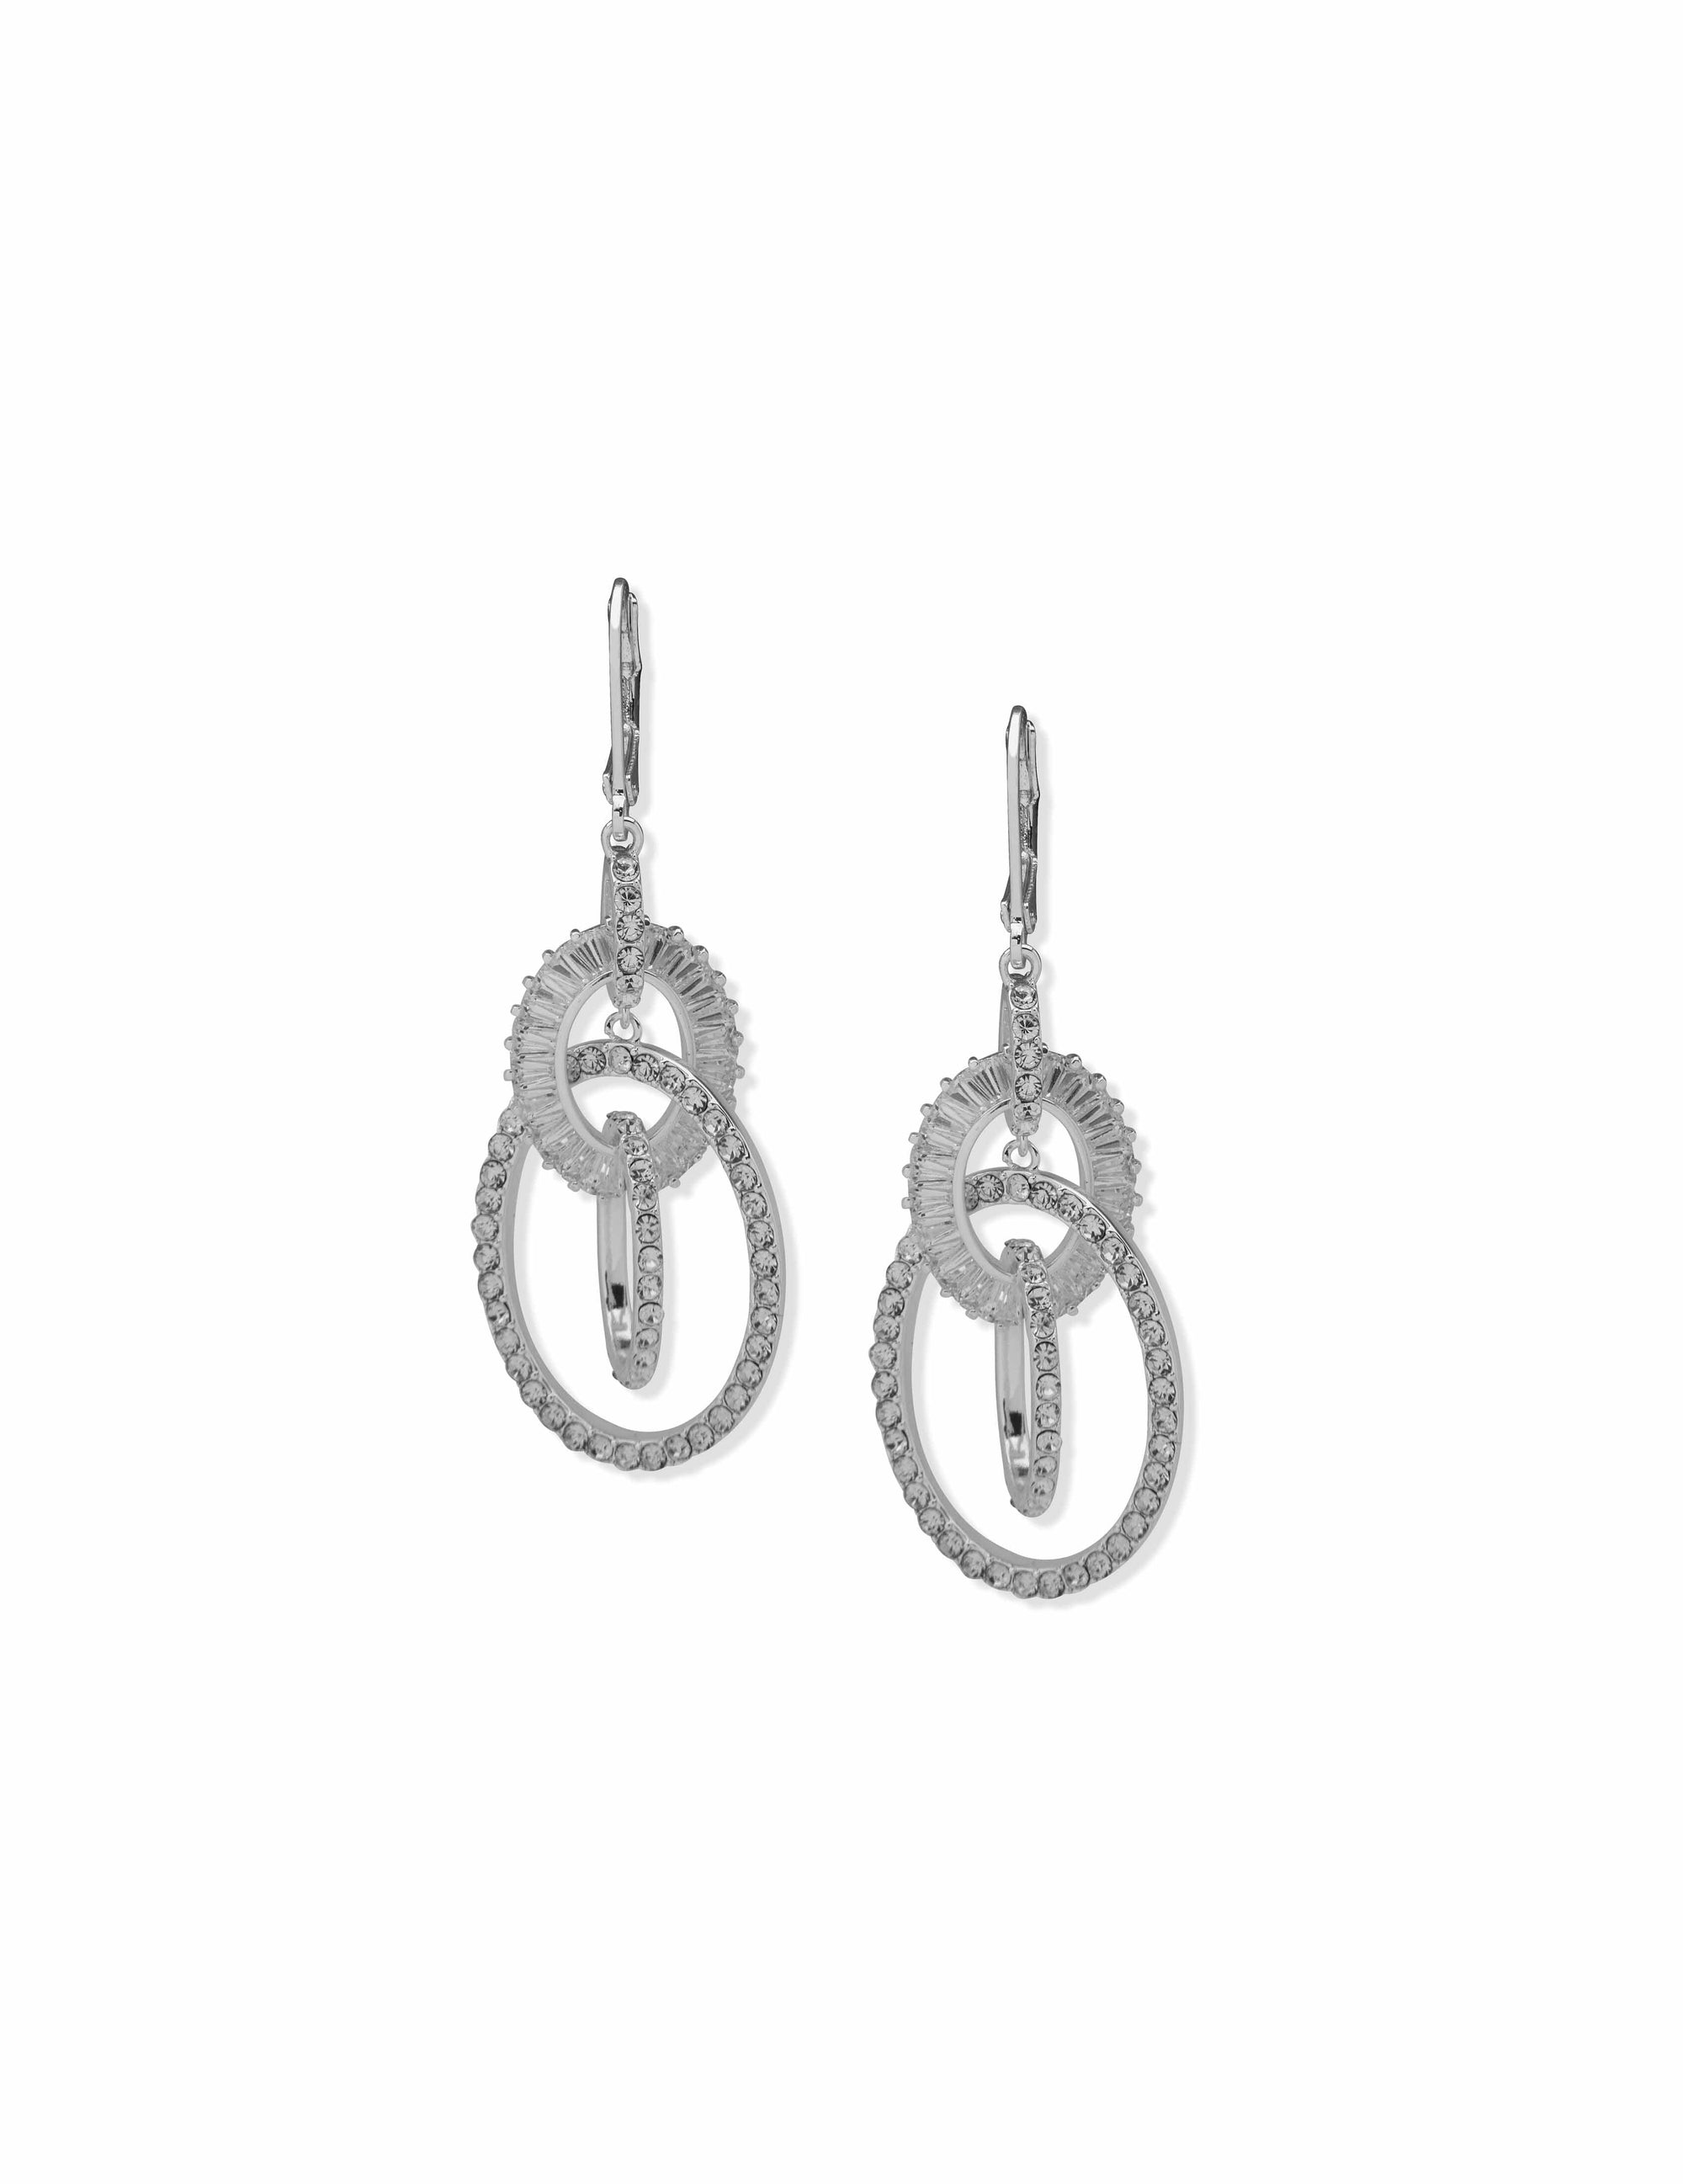 Anne Klein Silver-Tone Crystal Orbital Drop Earrings